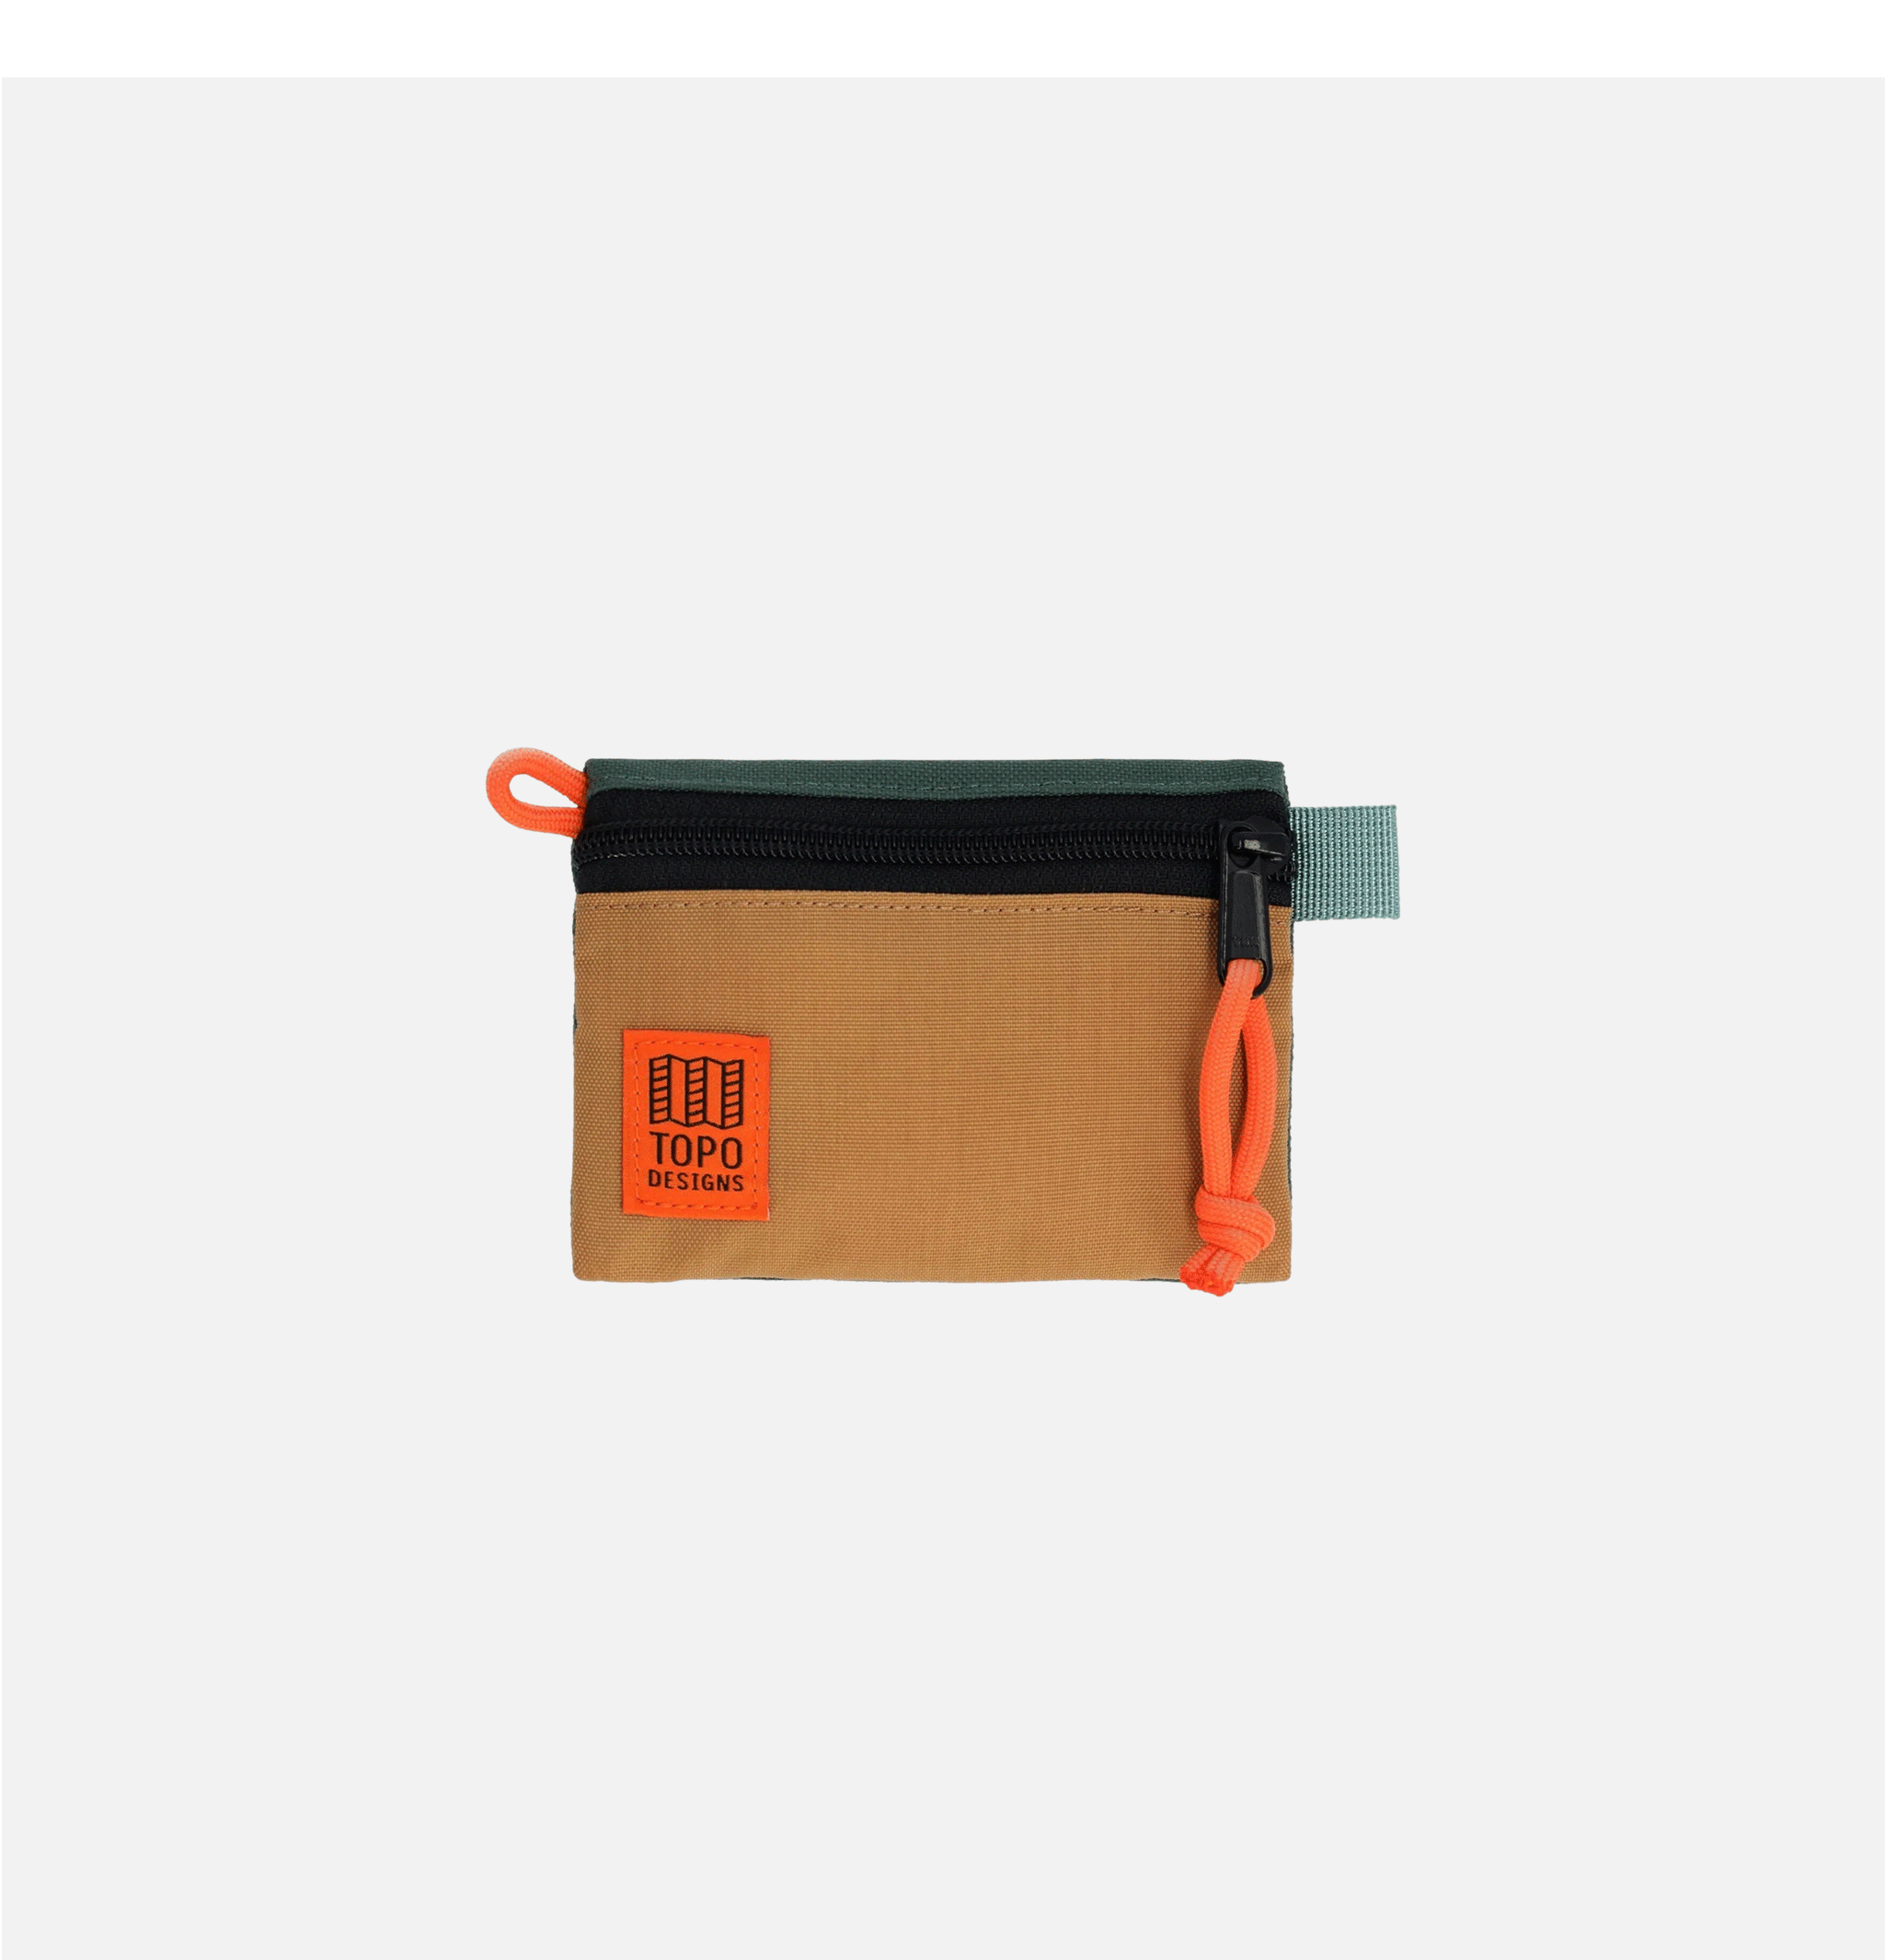 Topo Designs Micro Khaki Forest accessory bag